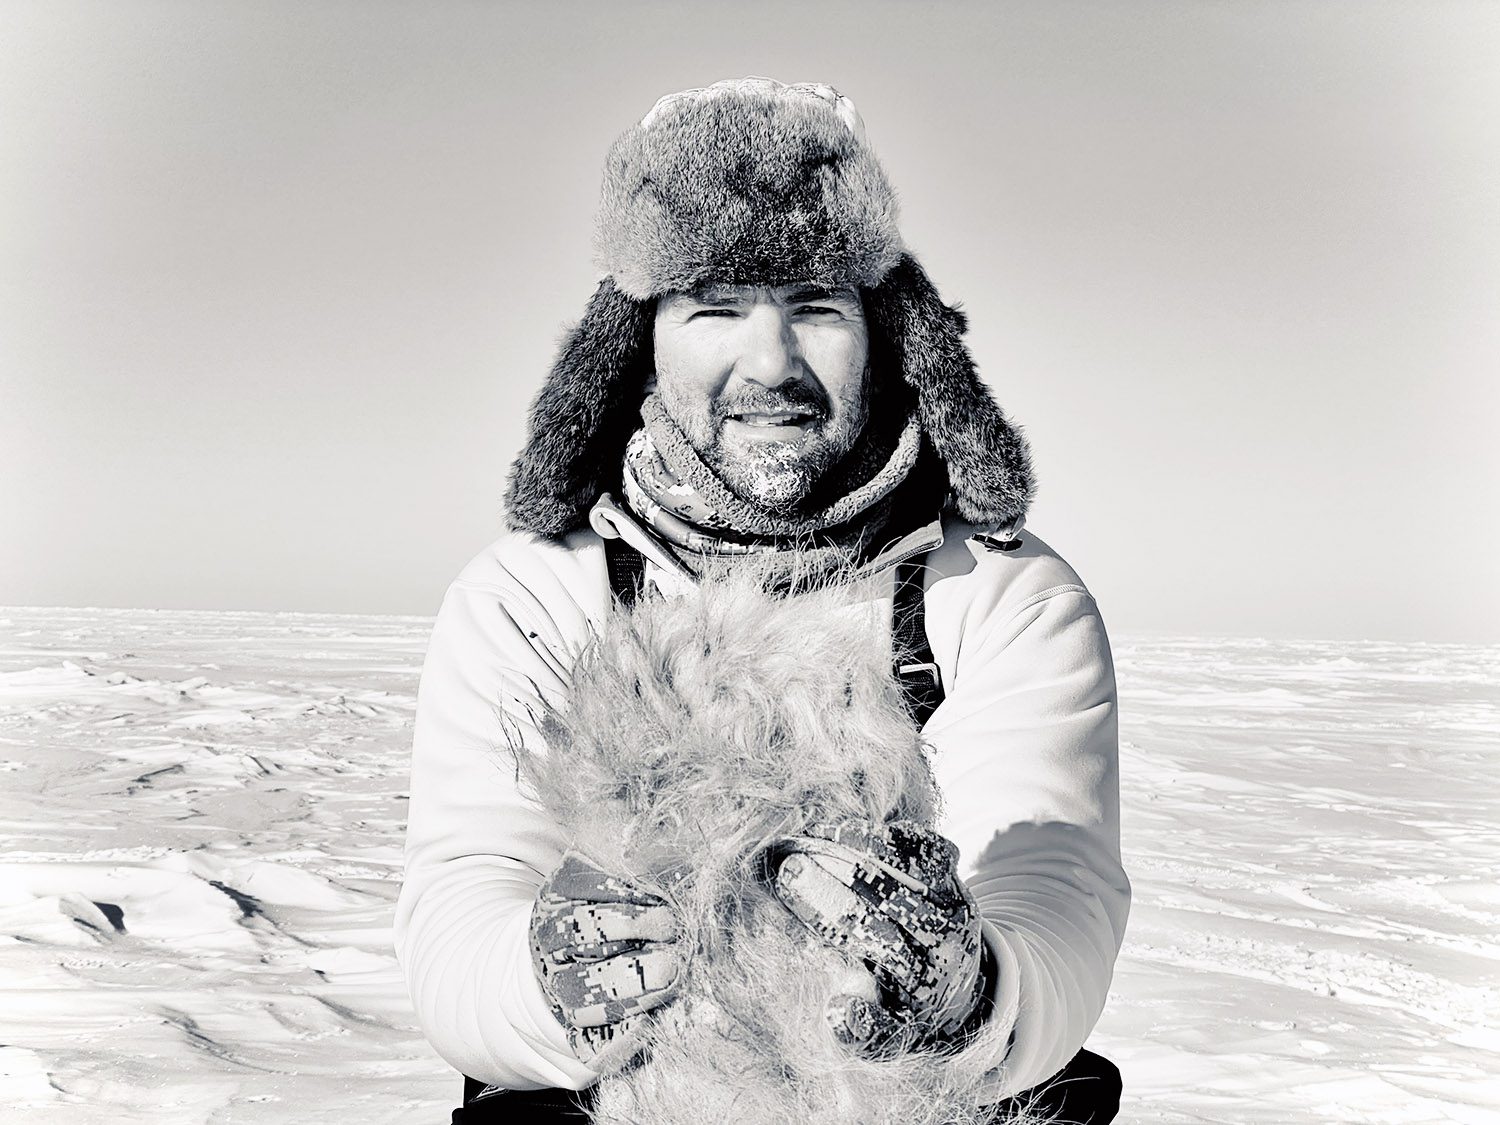 Gary Colbath with his archery polar bear